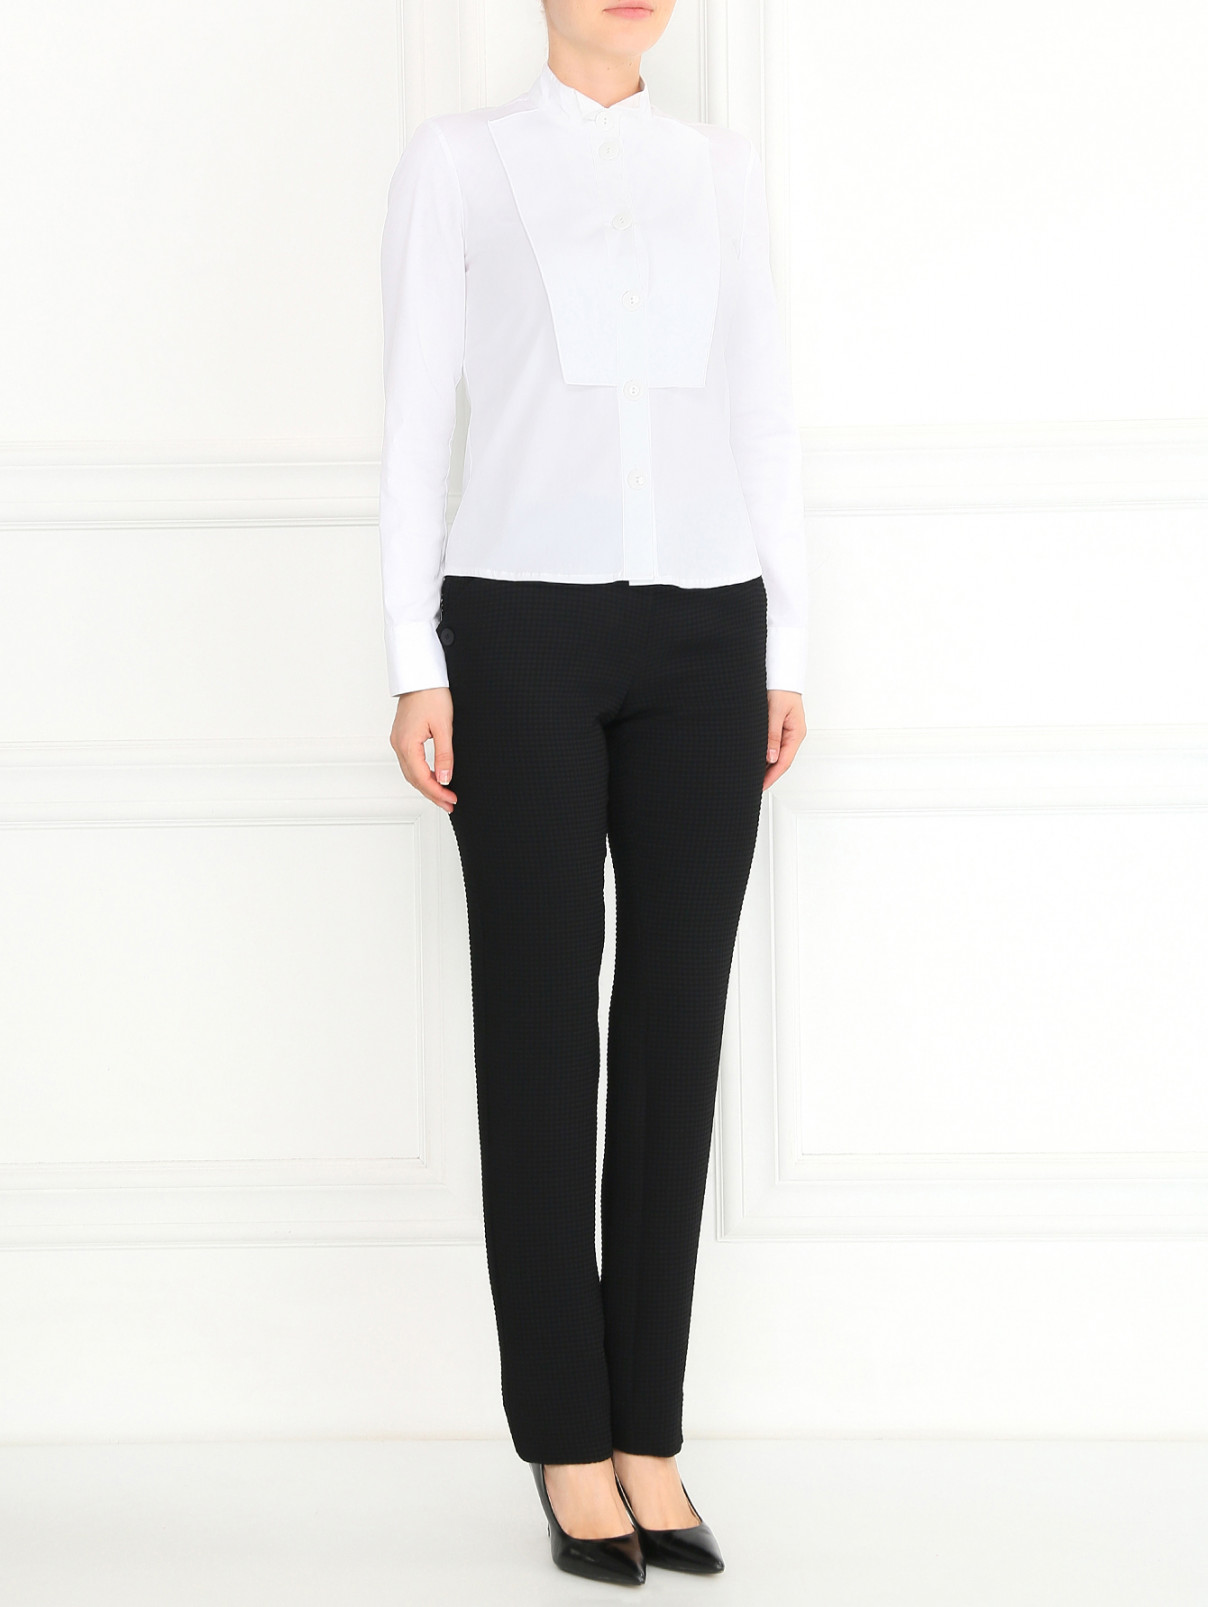 Прямые брюки из фактурной ткани Emporio Armani  –  Модель Общий вид  – Цвет:  Черный